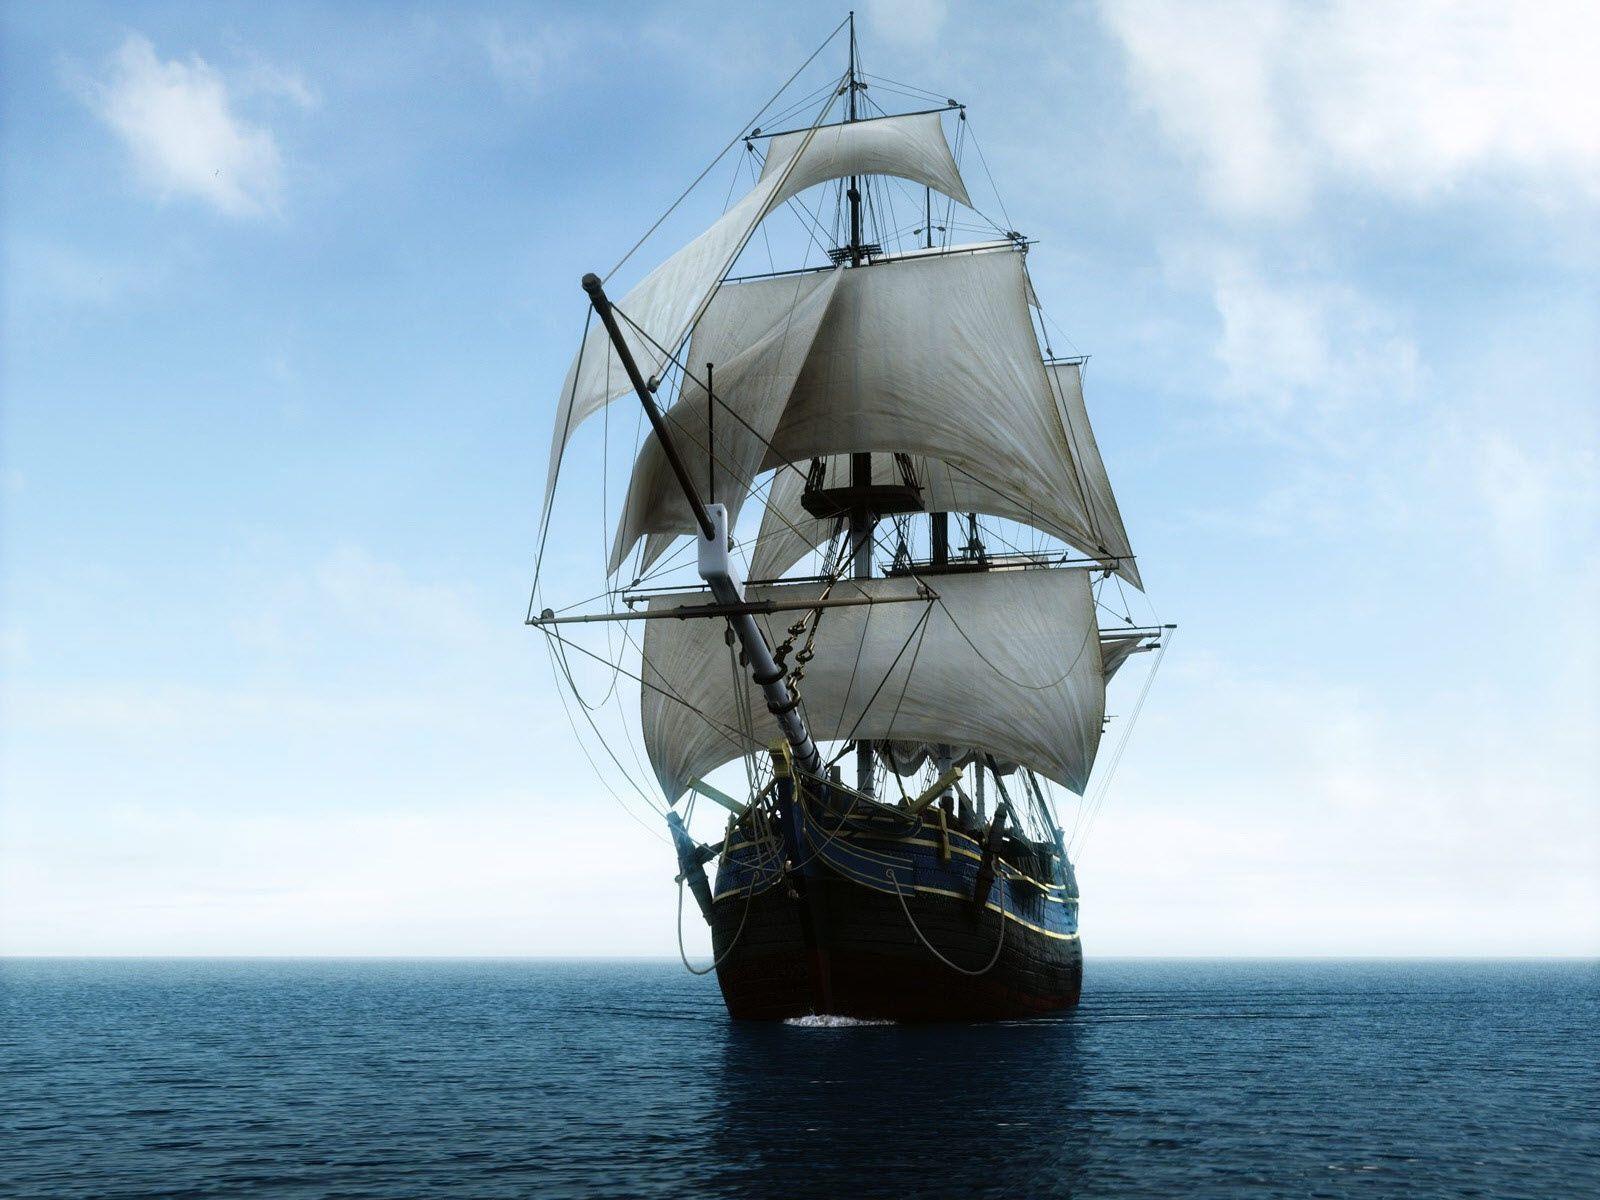 Pirate ship / Wallpaper as